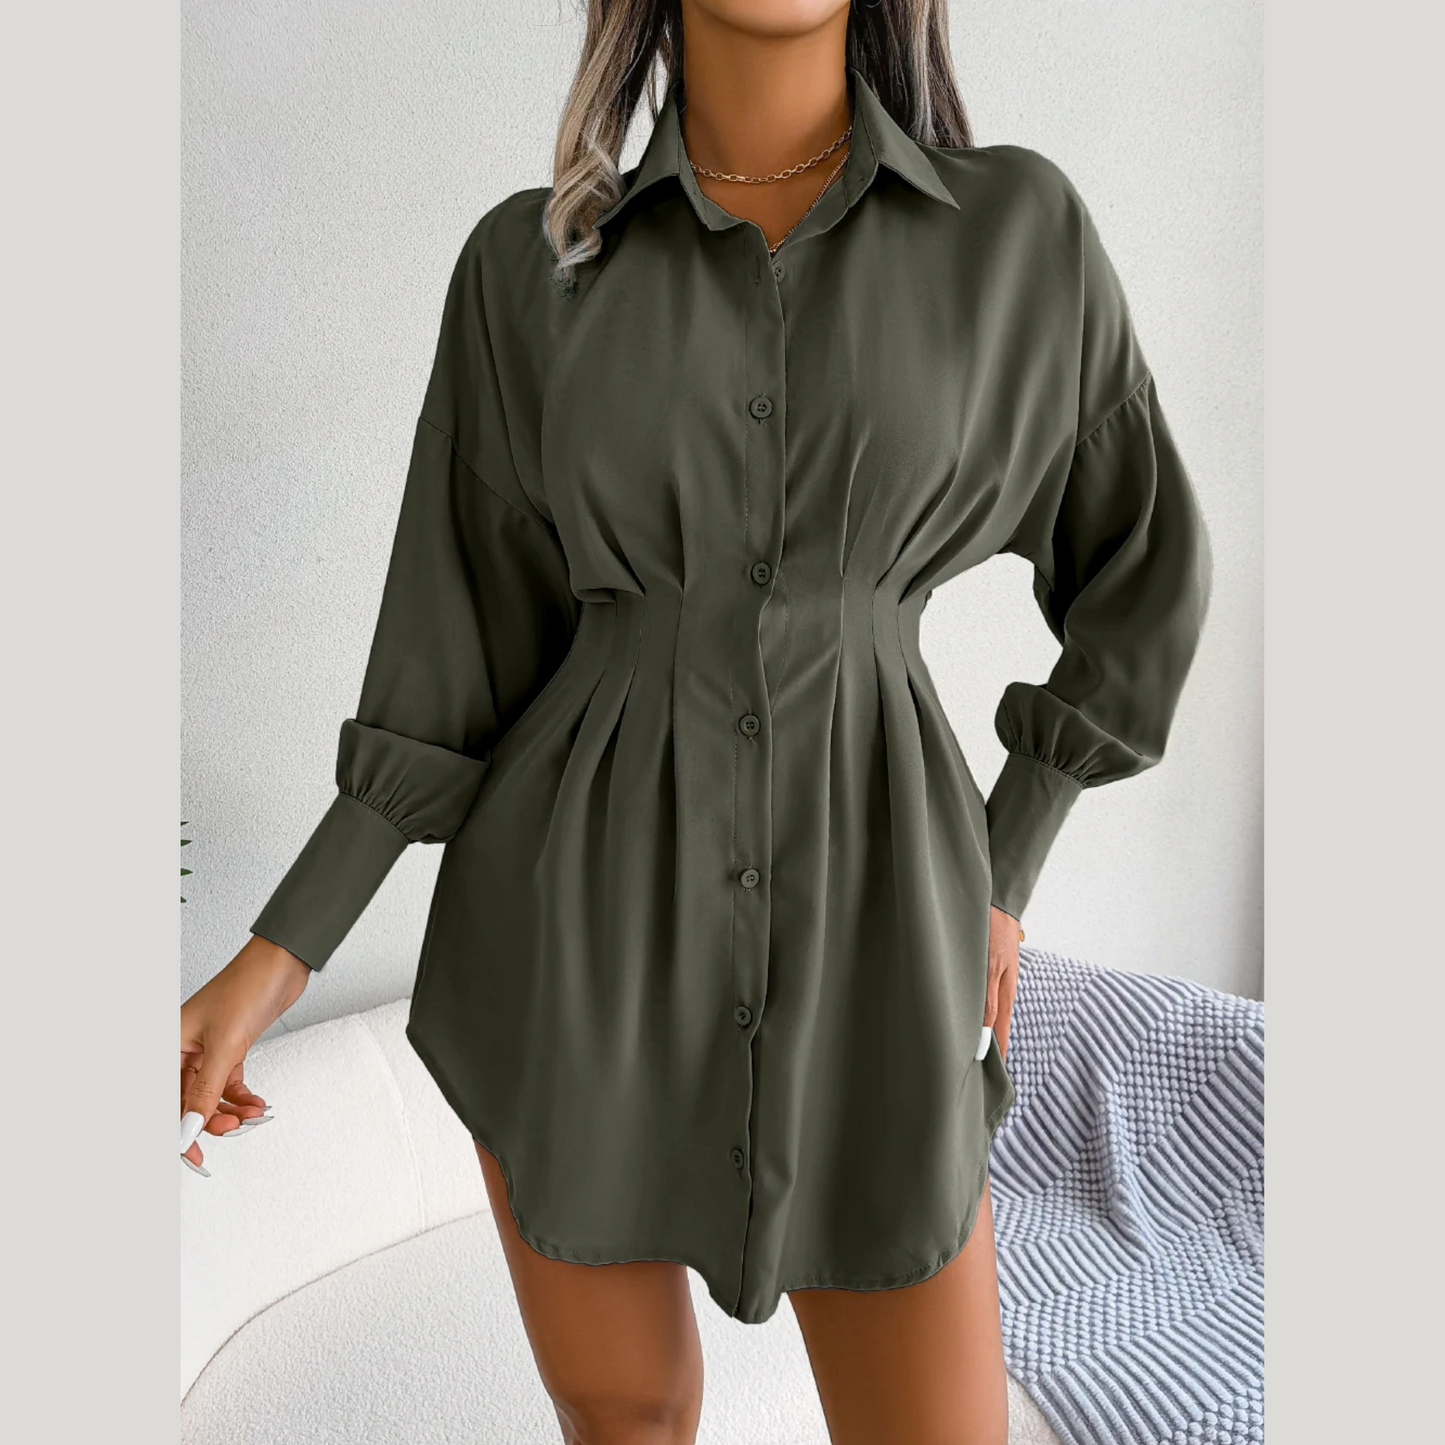 Adalee - Green Asymmetric Button-Up Shirt Dress